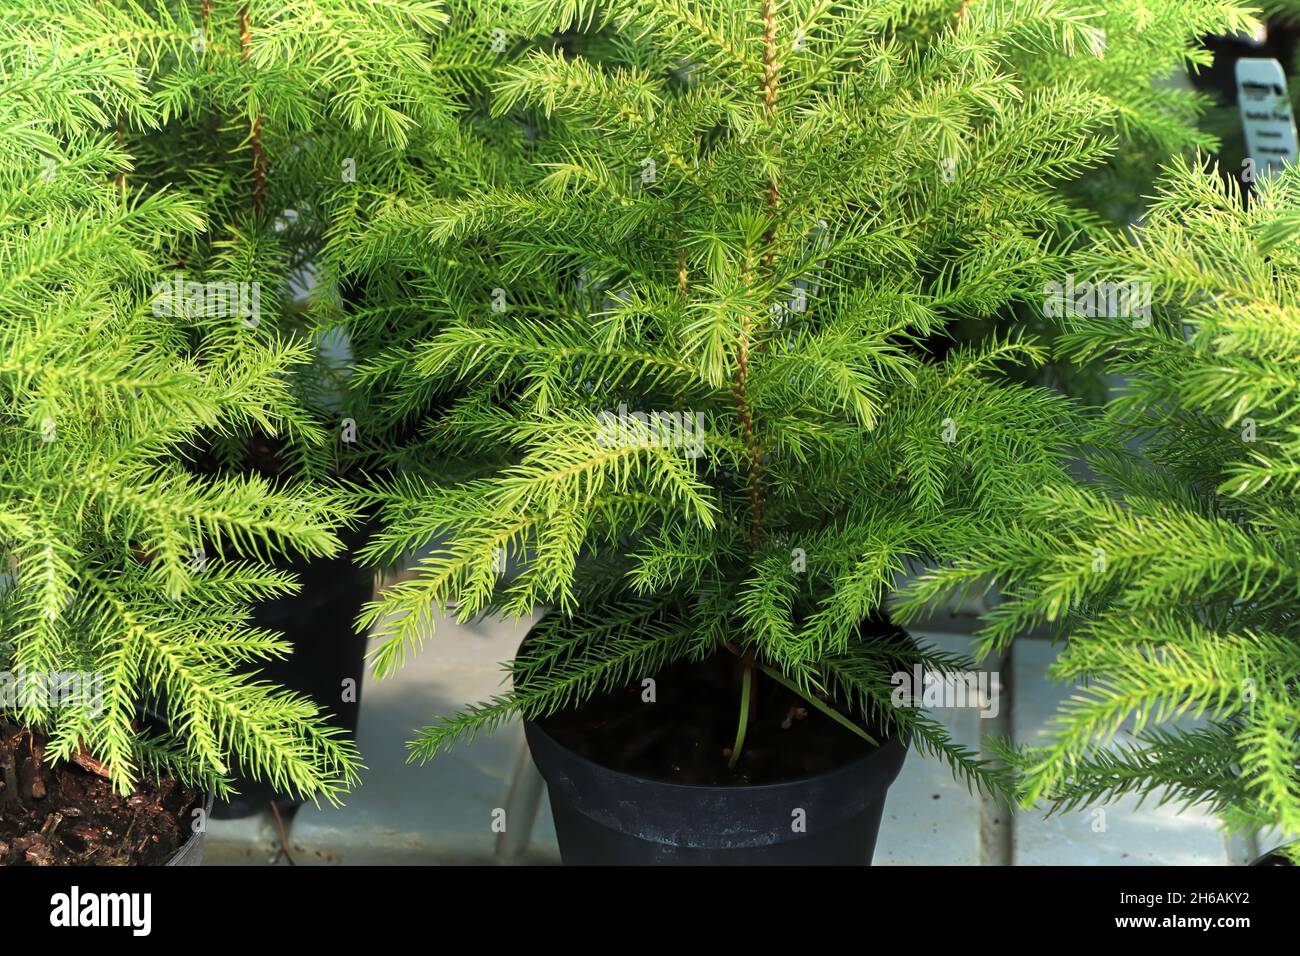 Cierre de una planta de pino de norfolk en macetas verdes Fotografía de  stock - Alamy